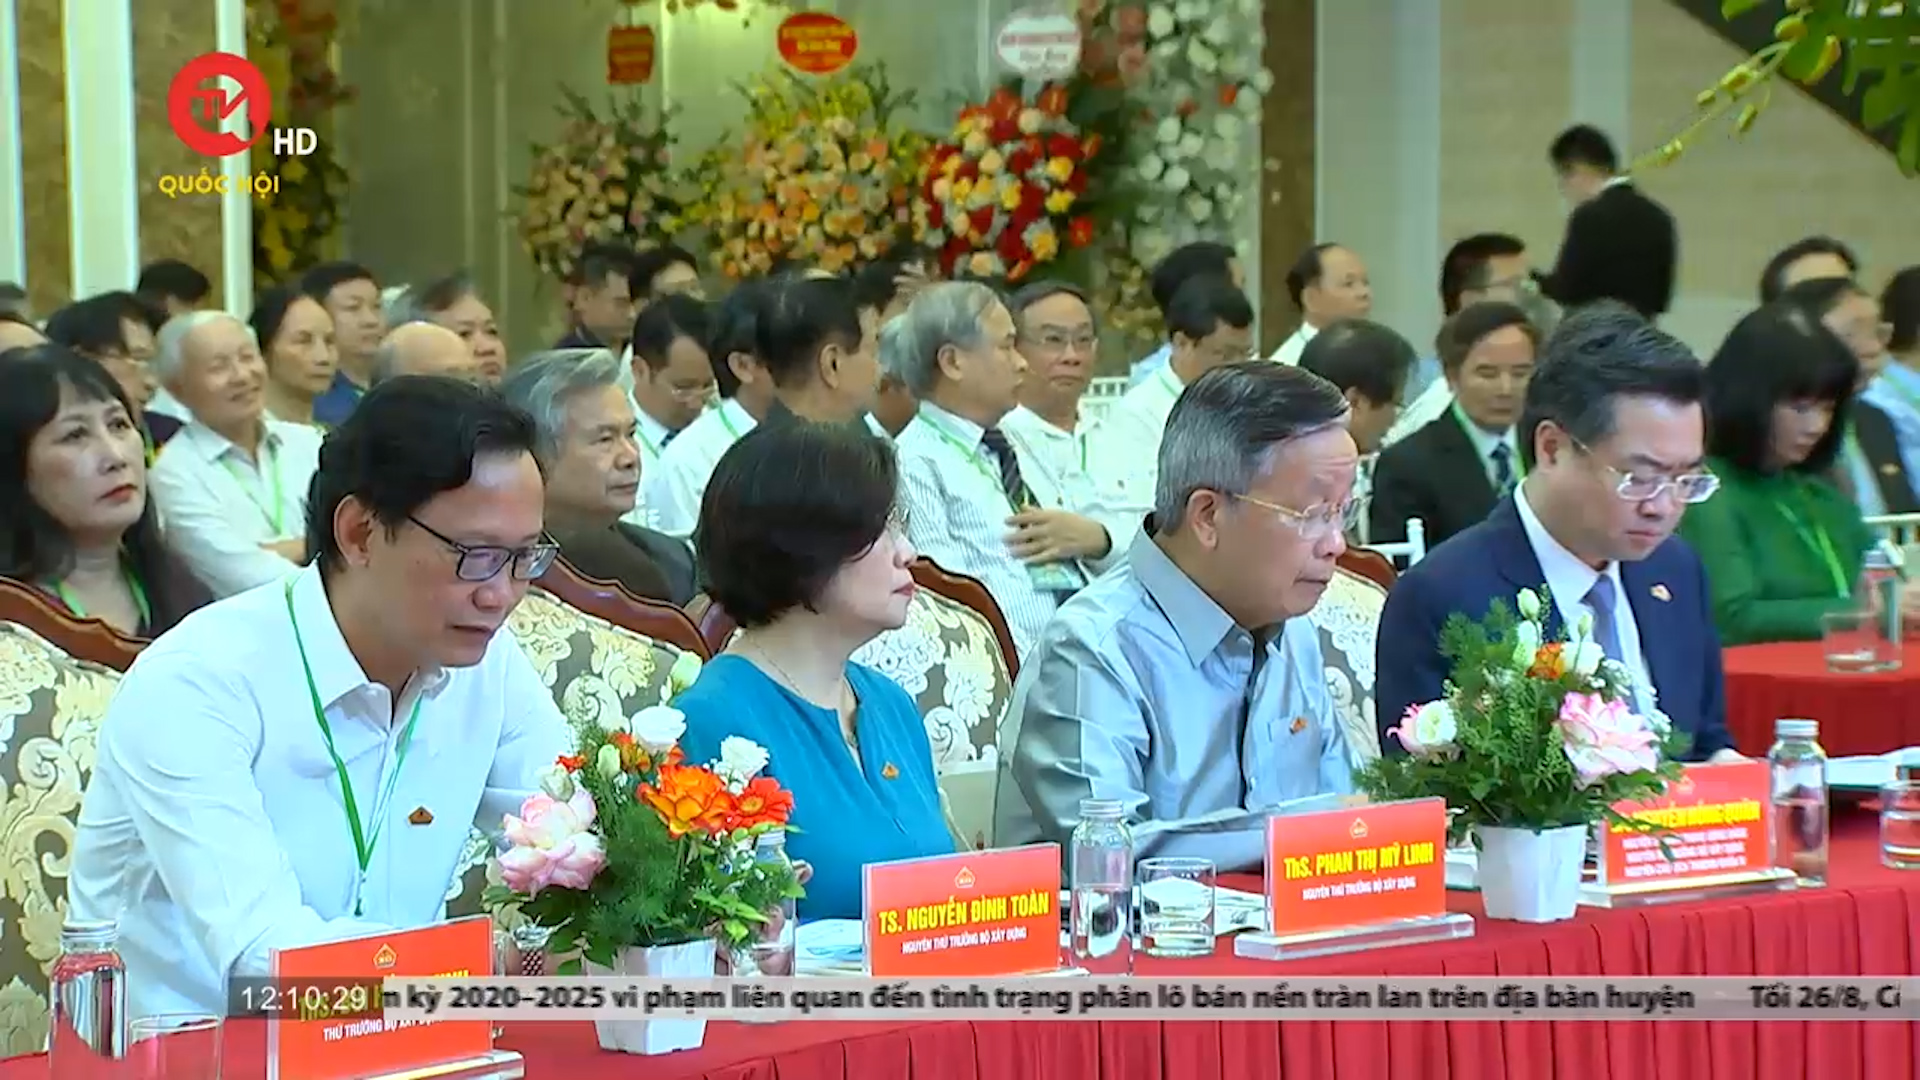 Tổng hội Xây dựng Việt Nam kỷ niệm 40 năm thành lập